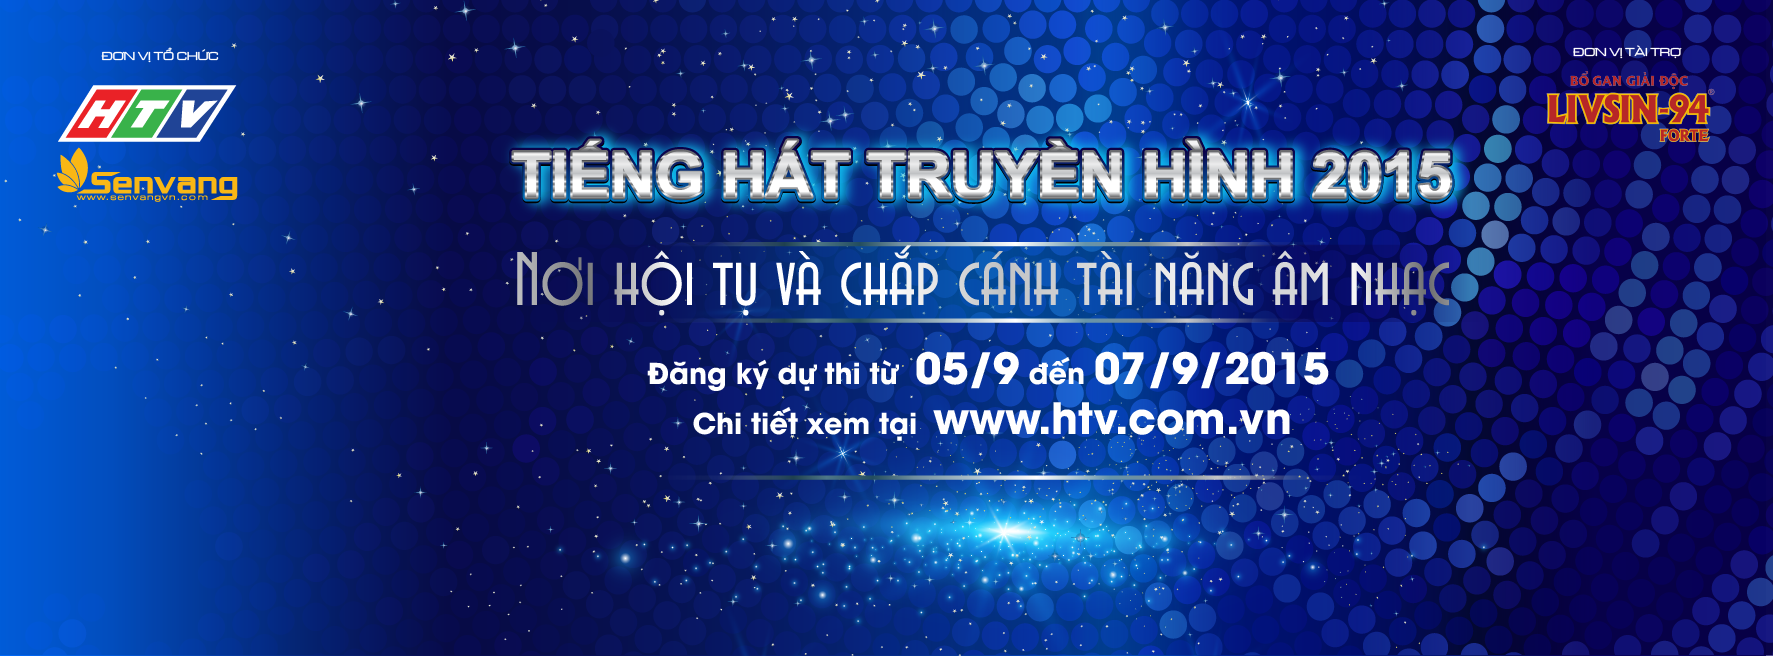 Livsin-94 Forte hân hạnh là nhà tài trợ chính cuộc thi Tiếng hát truyền hình HTV 2015